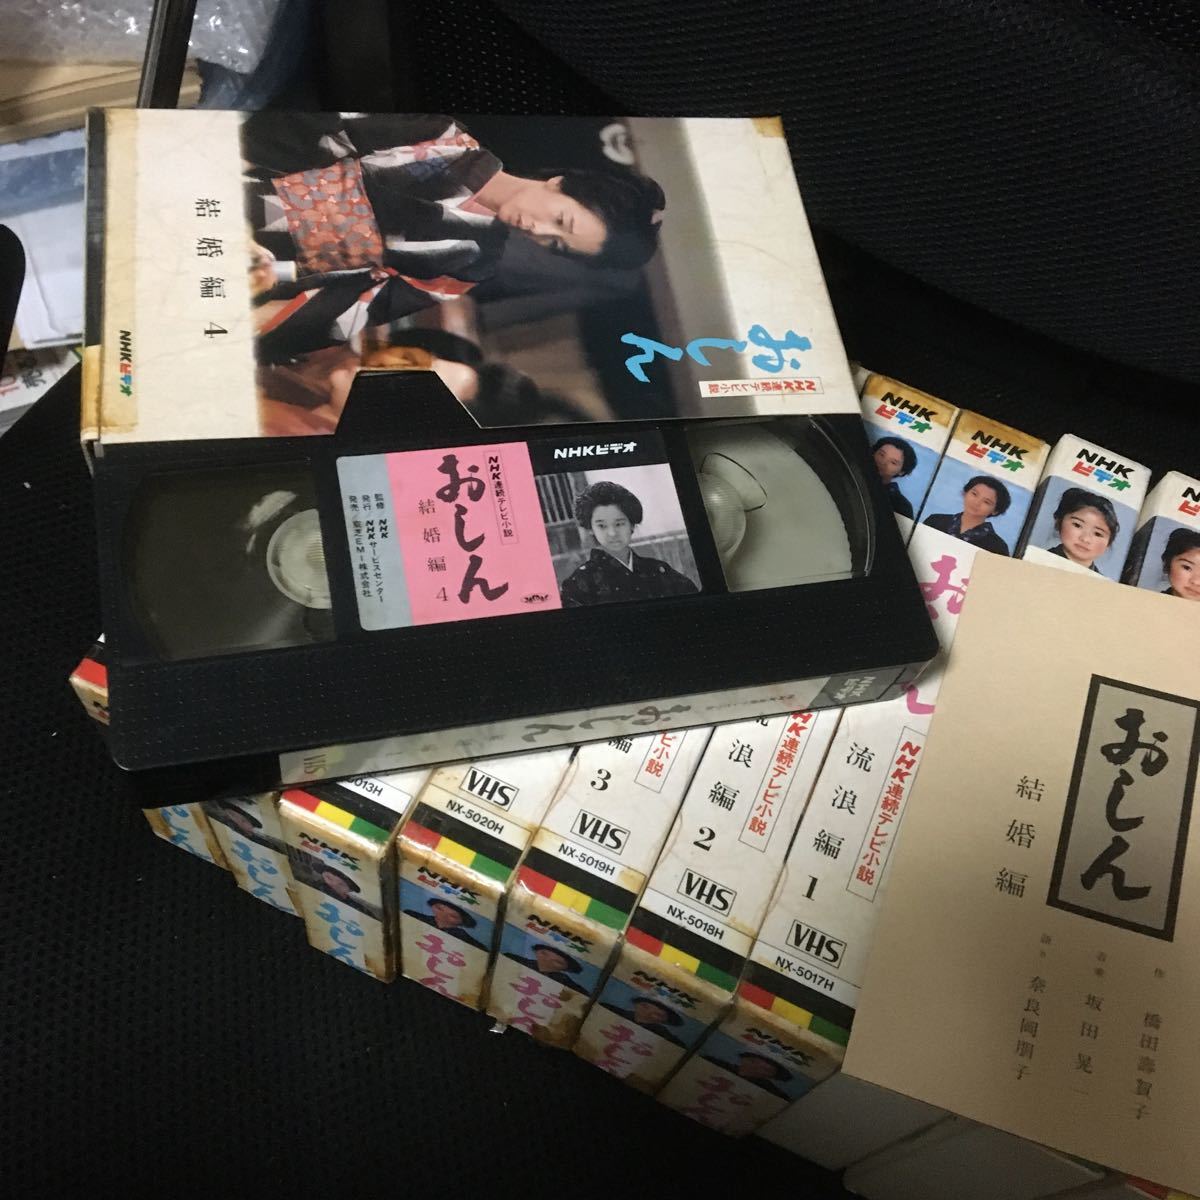 ヤフオク おしん Vhs ビデオテープ 12本組 少女編 放浪編